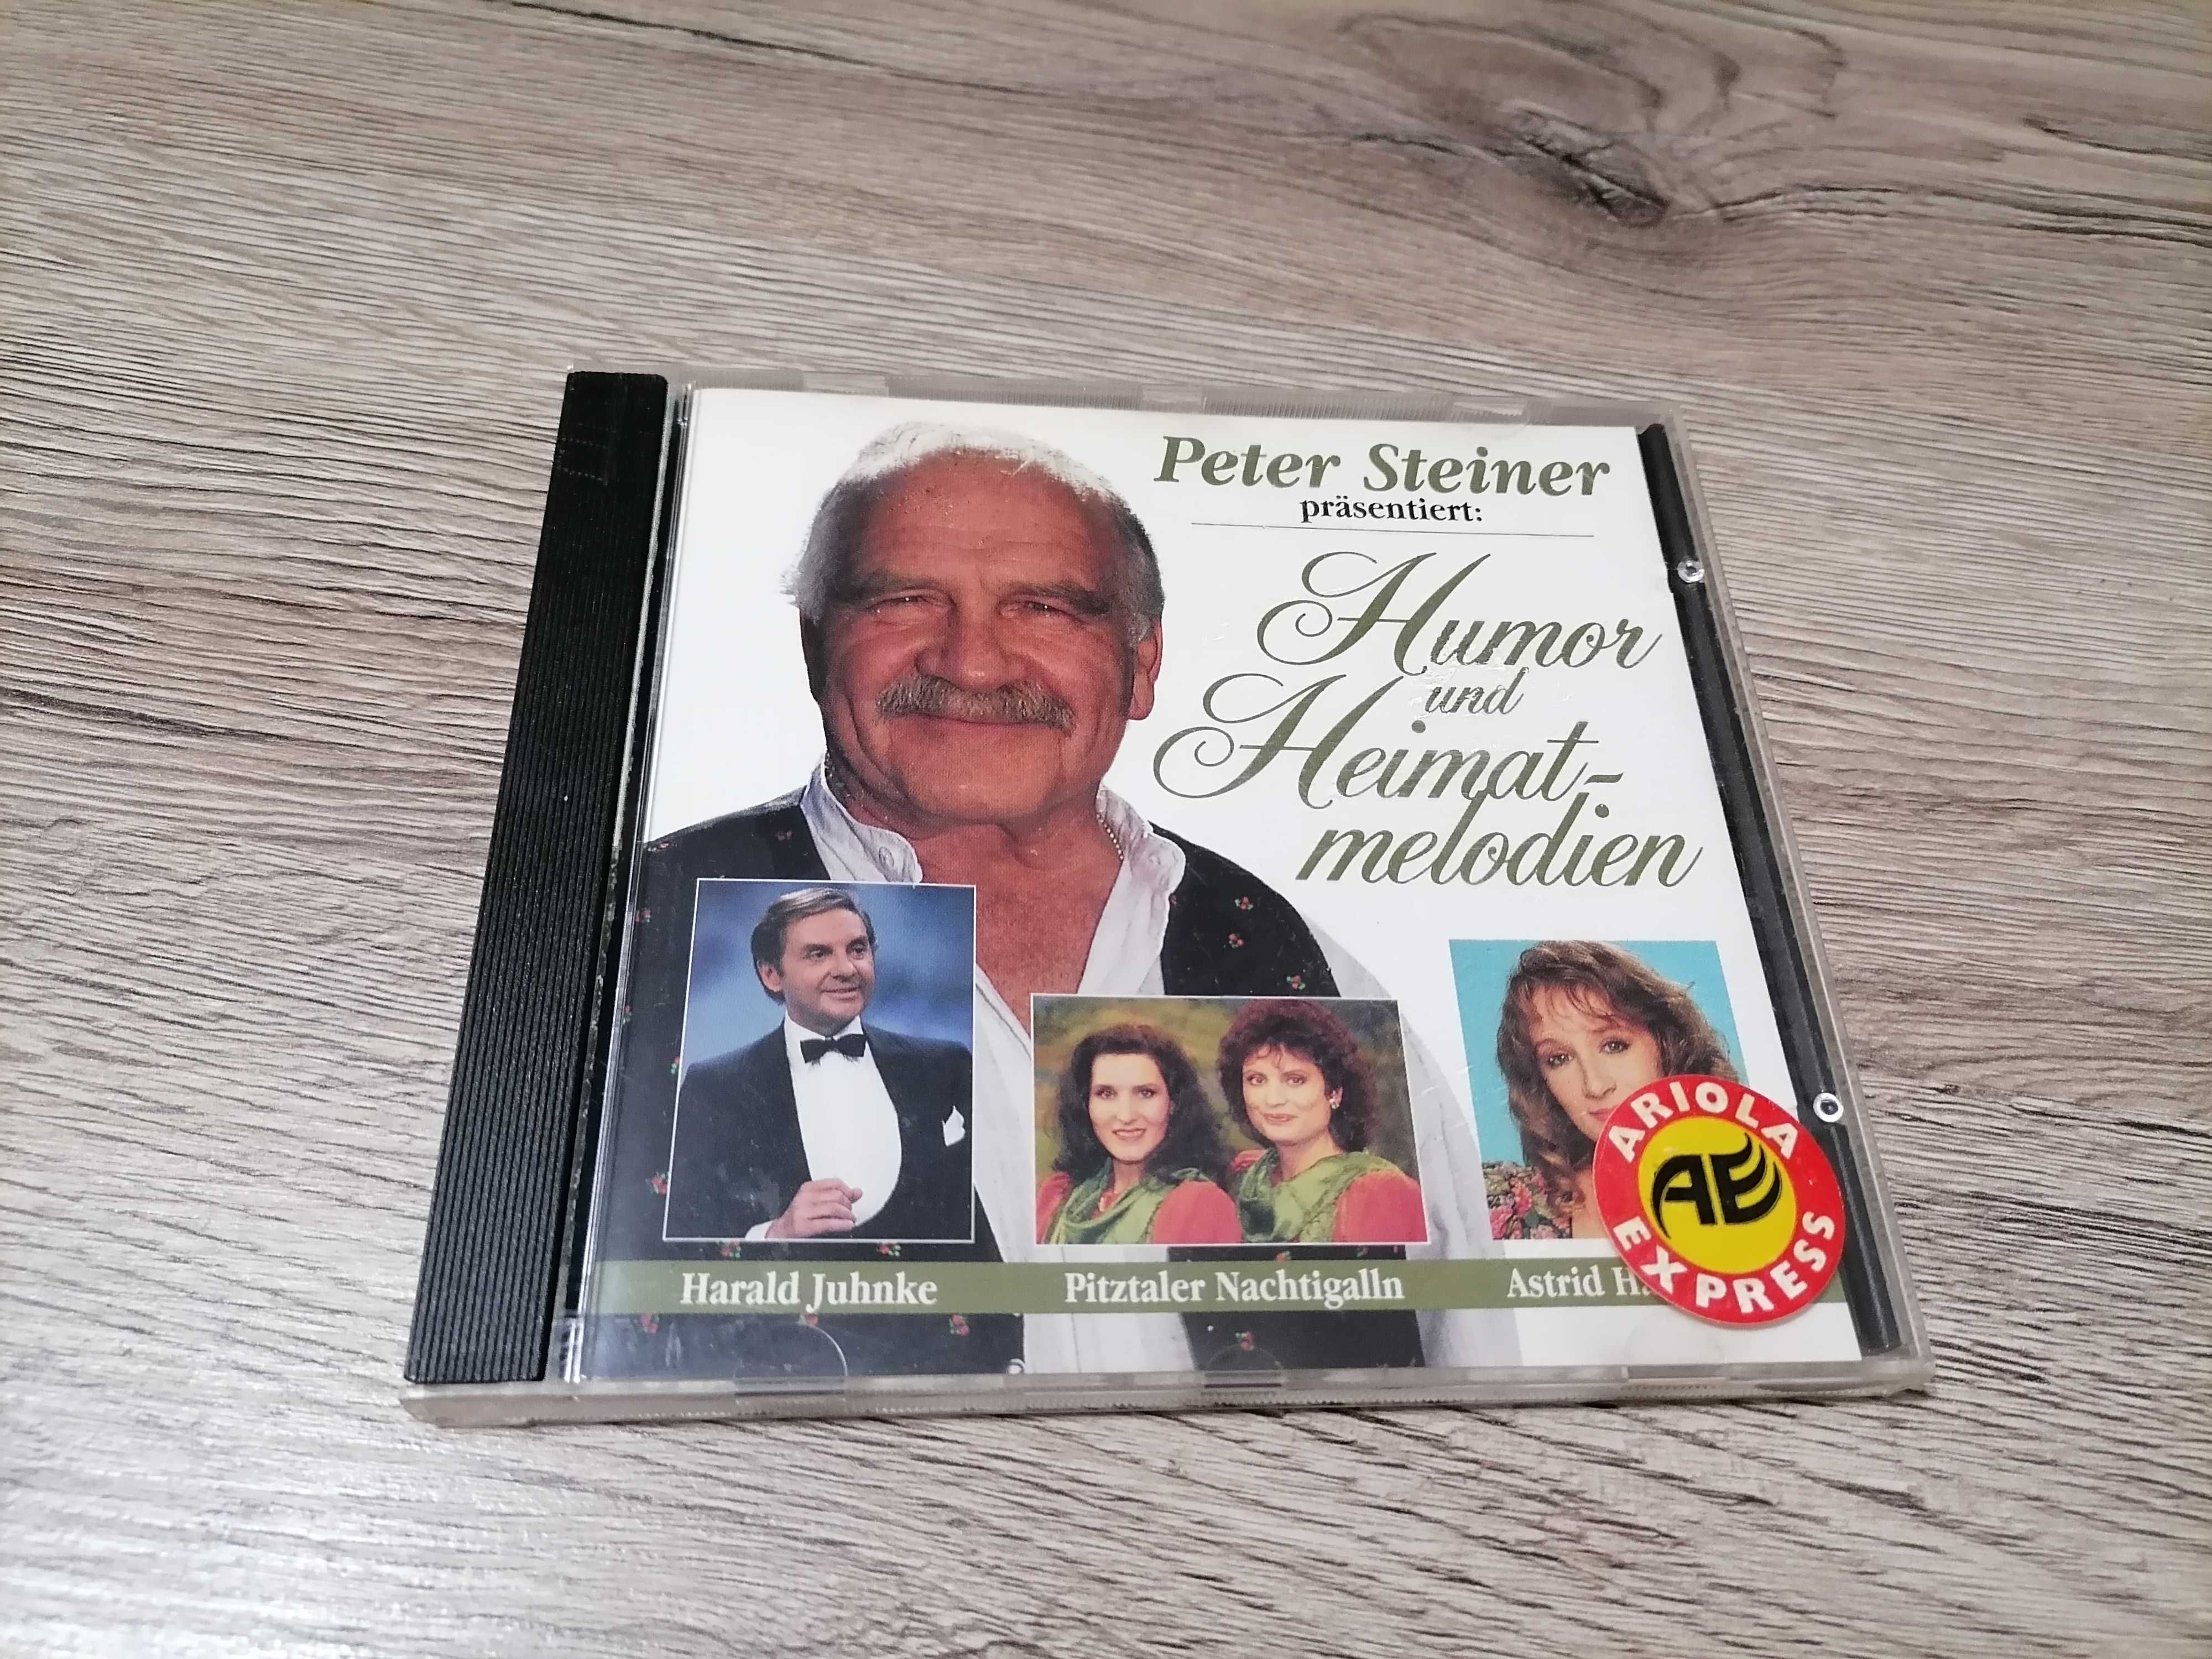 Peter Steiner prasentiert - Humor und Meimatmelodien CD